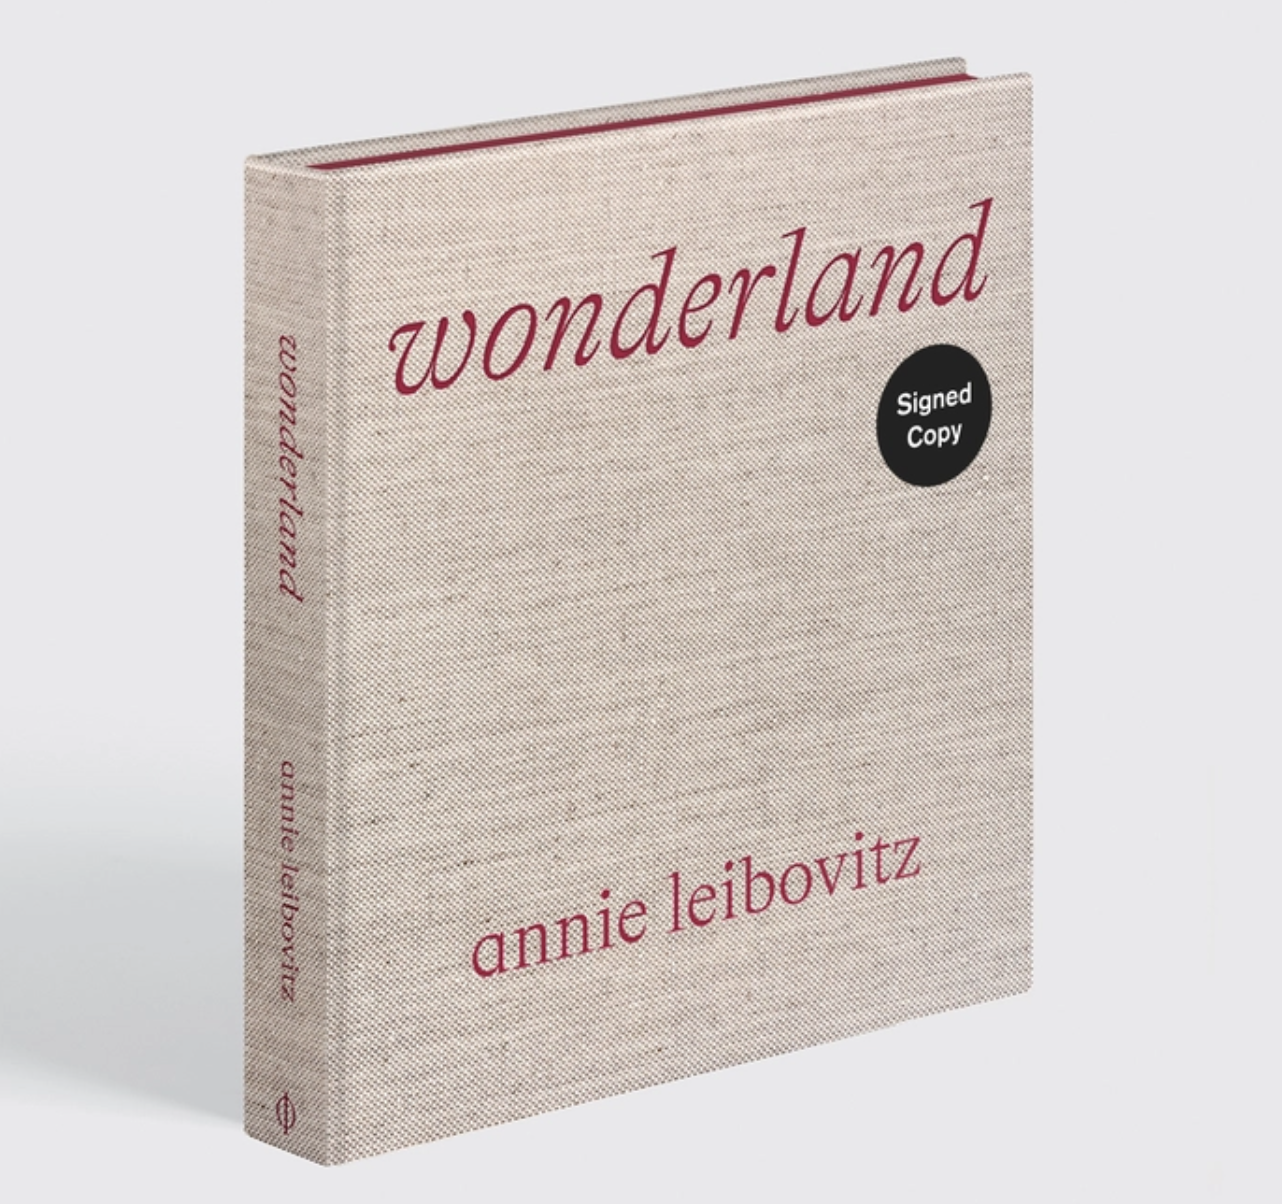 The Wick - Objects Annie Leibovitz: Wonderland